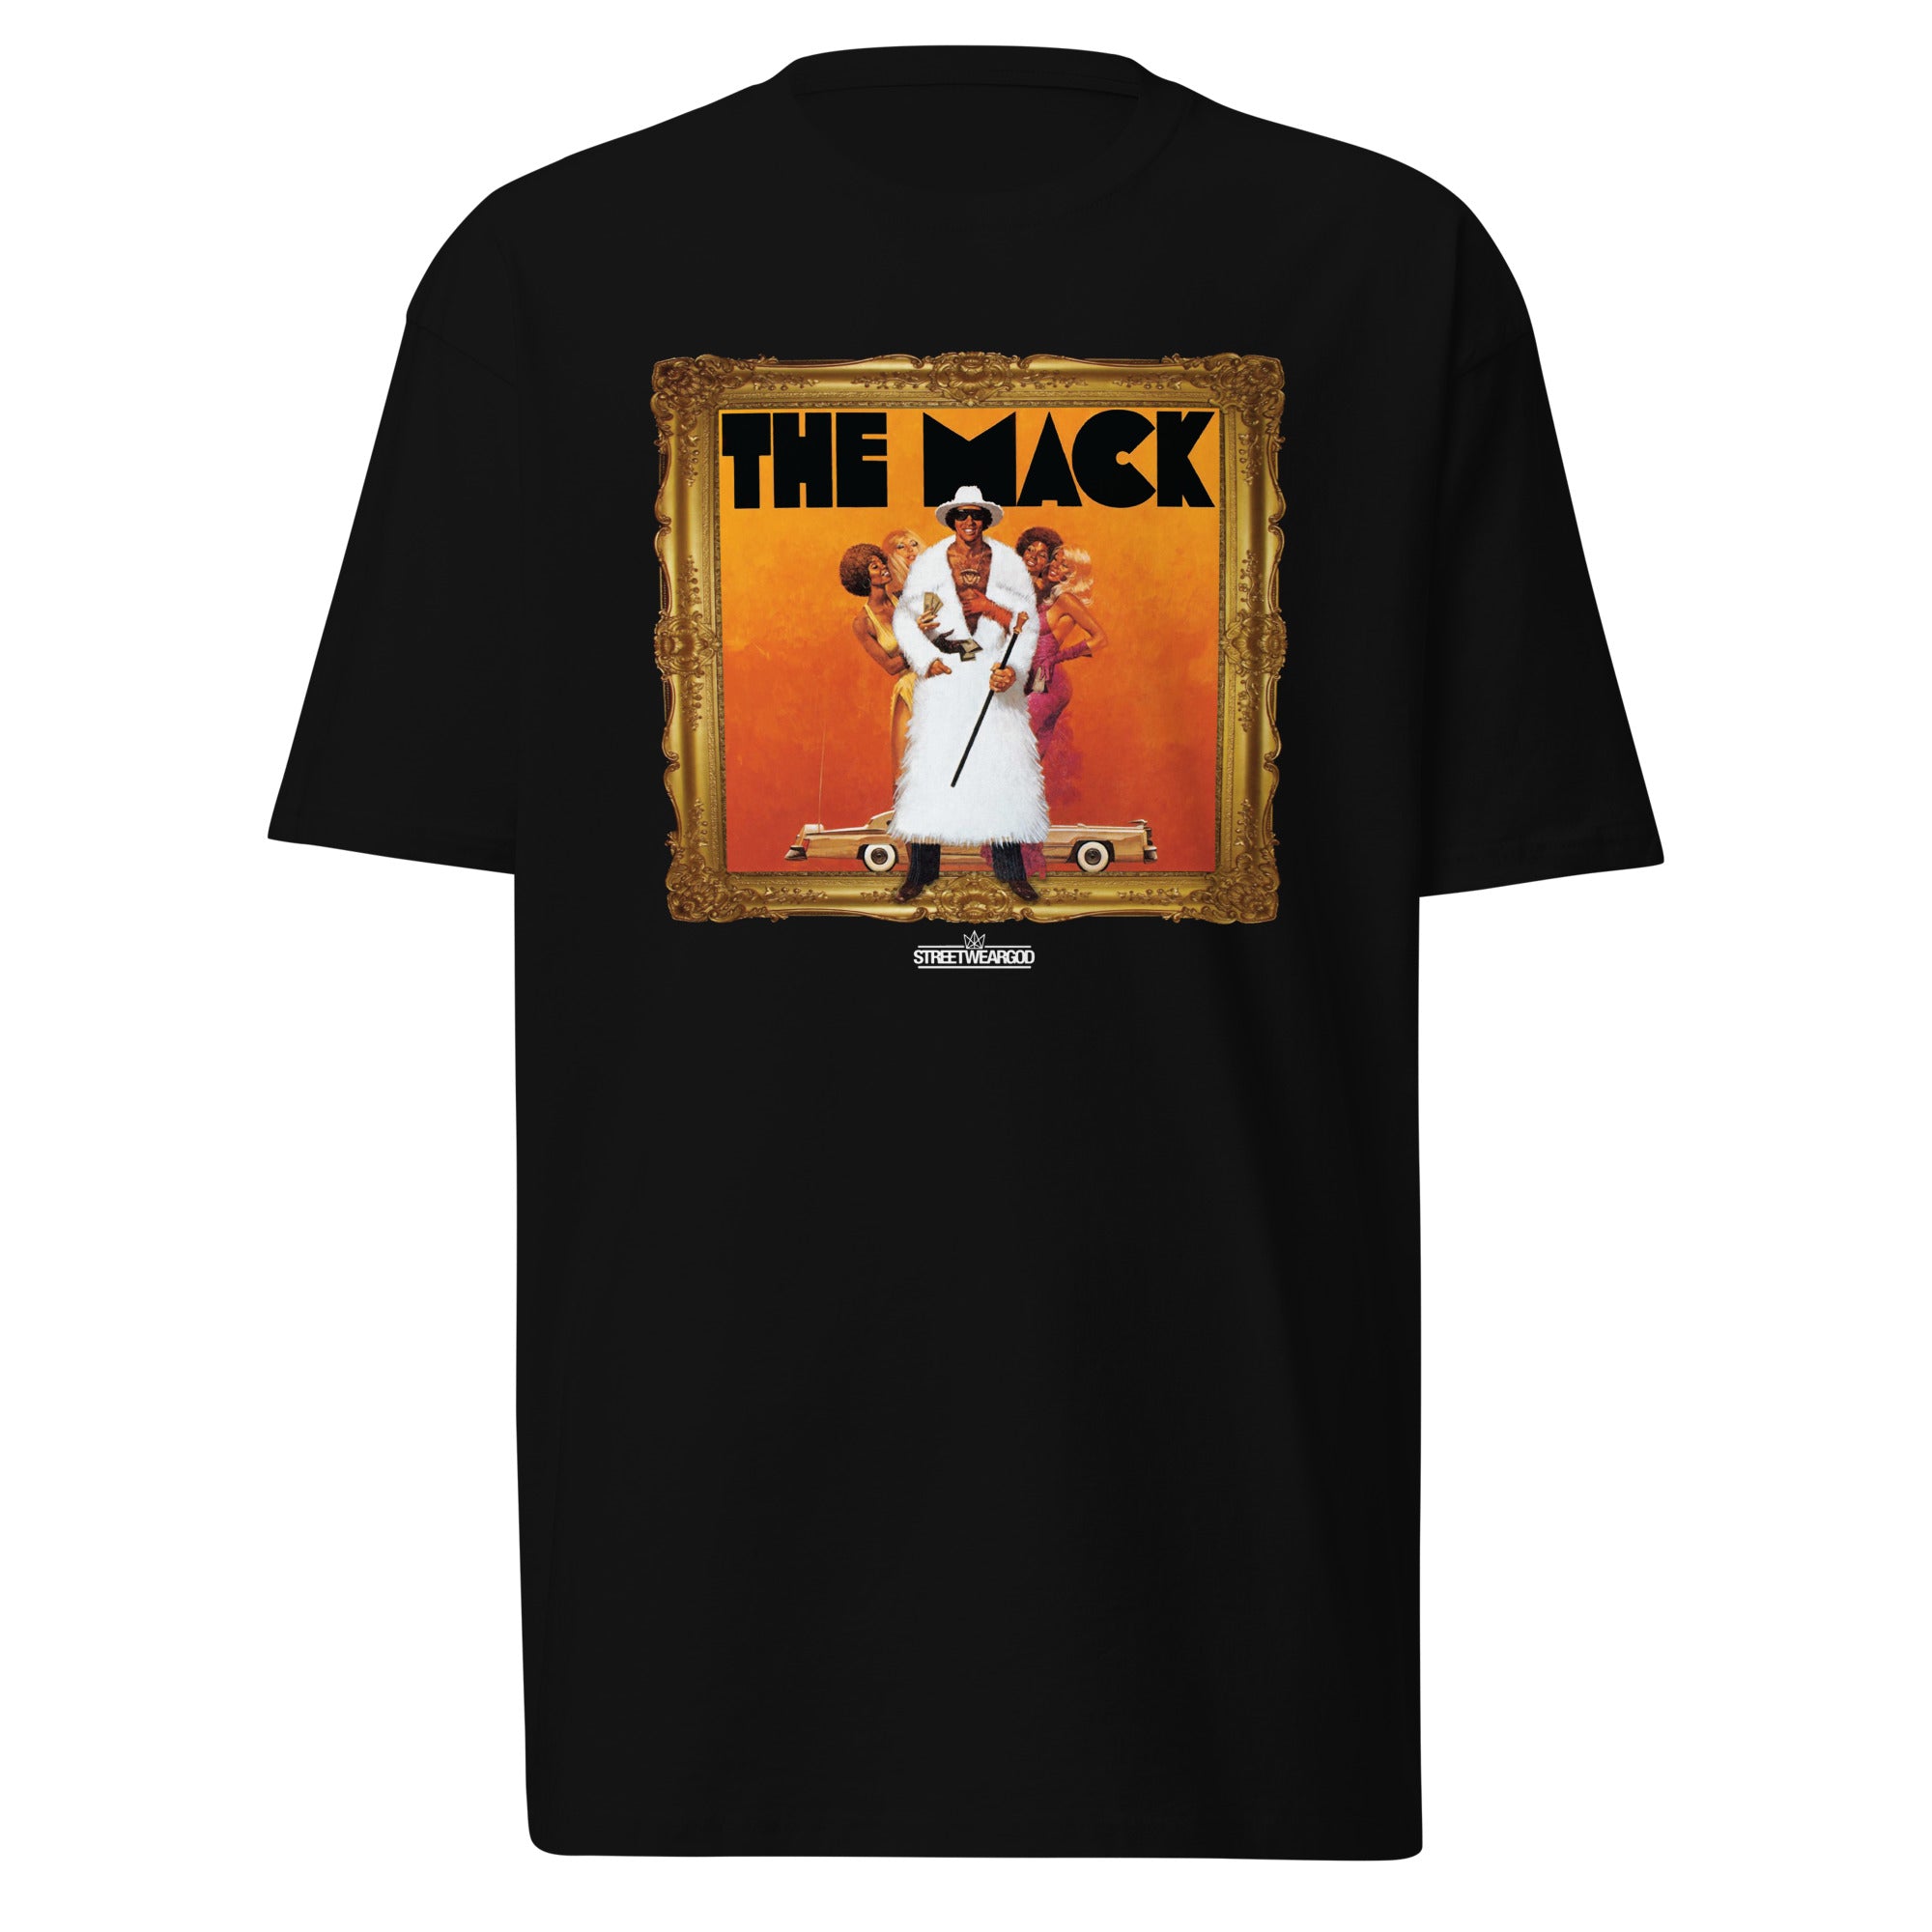 Mack black premium heavyweight tee